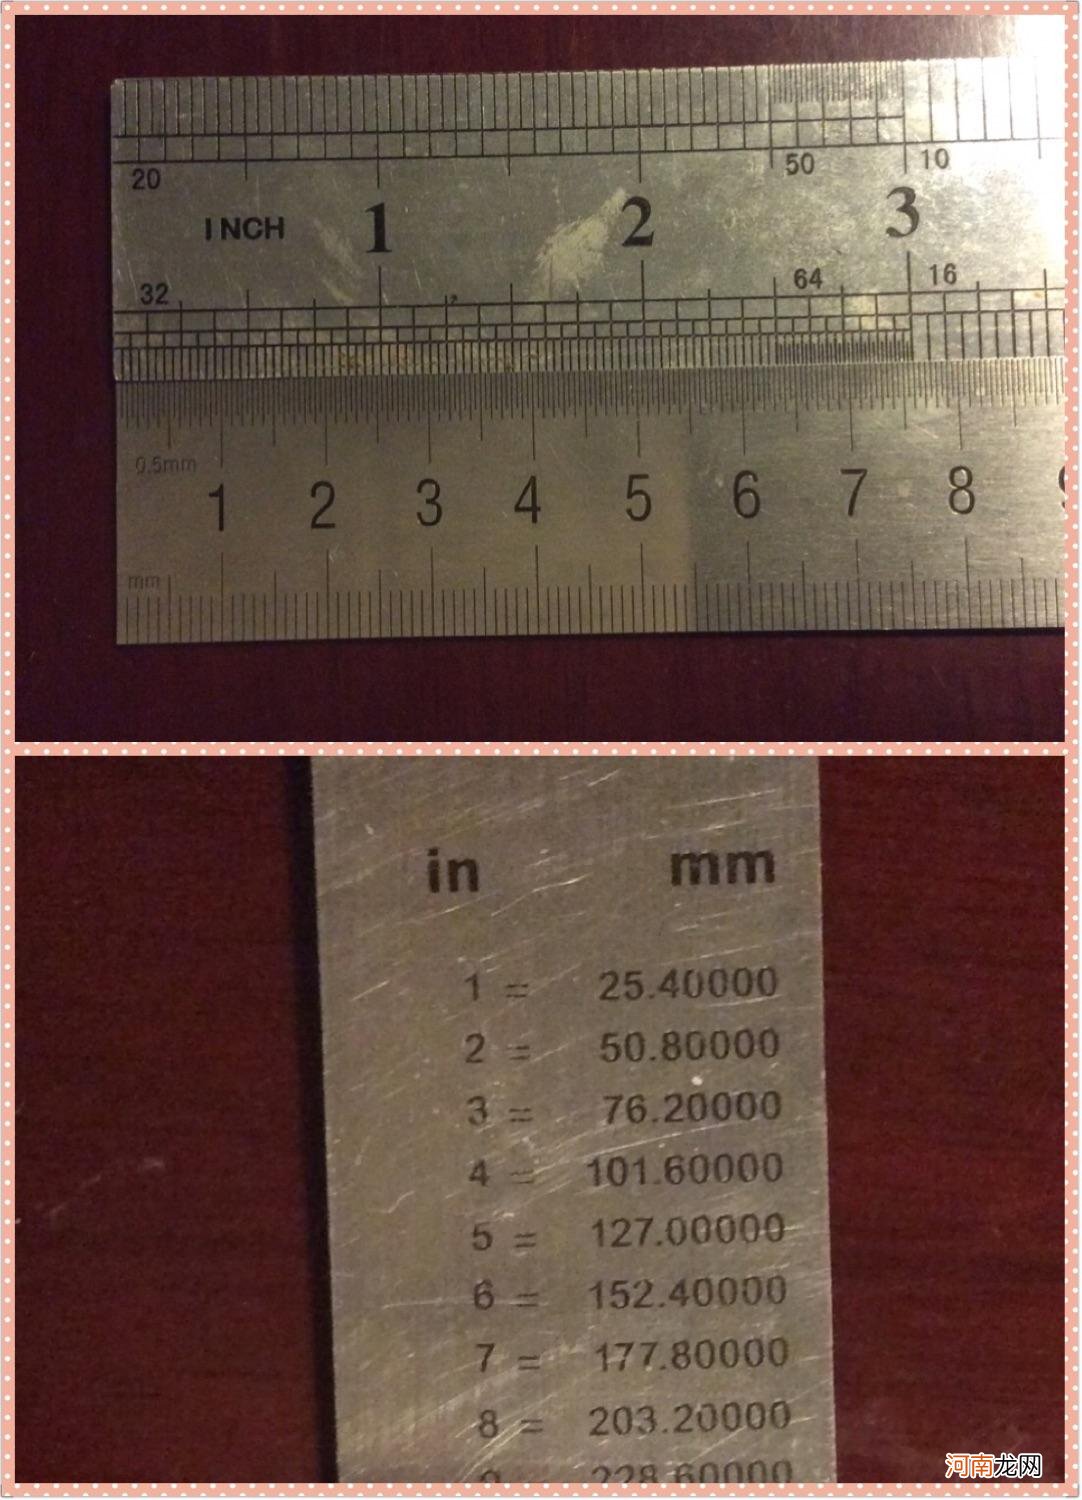 1英寸等于多少厘米 1英寸等于多少厘米长度